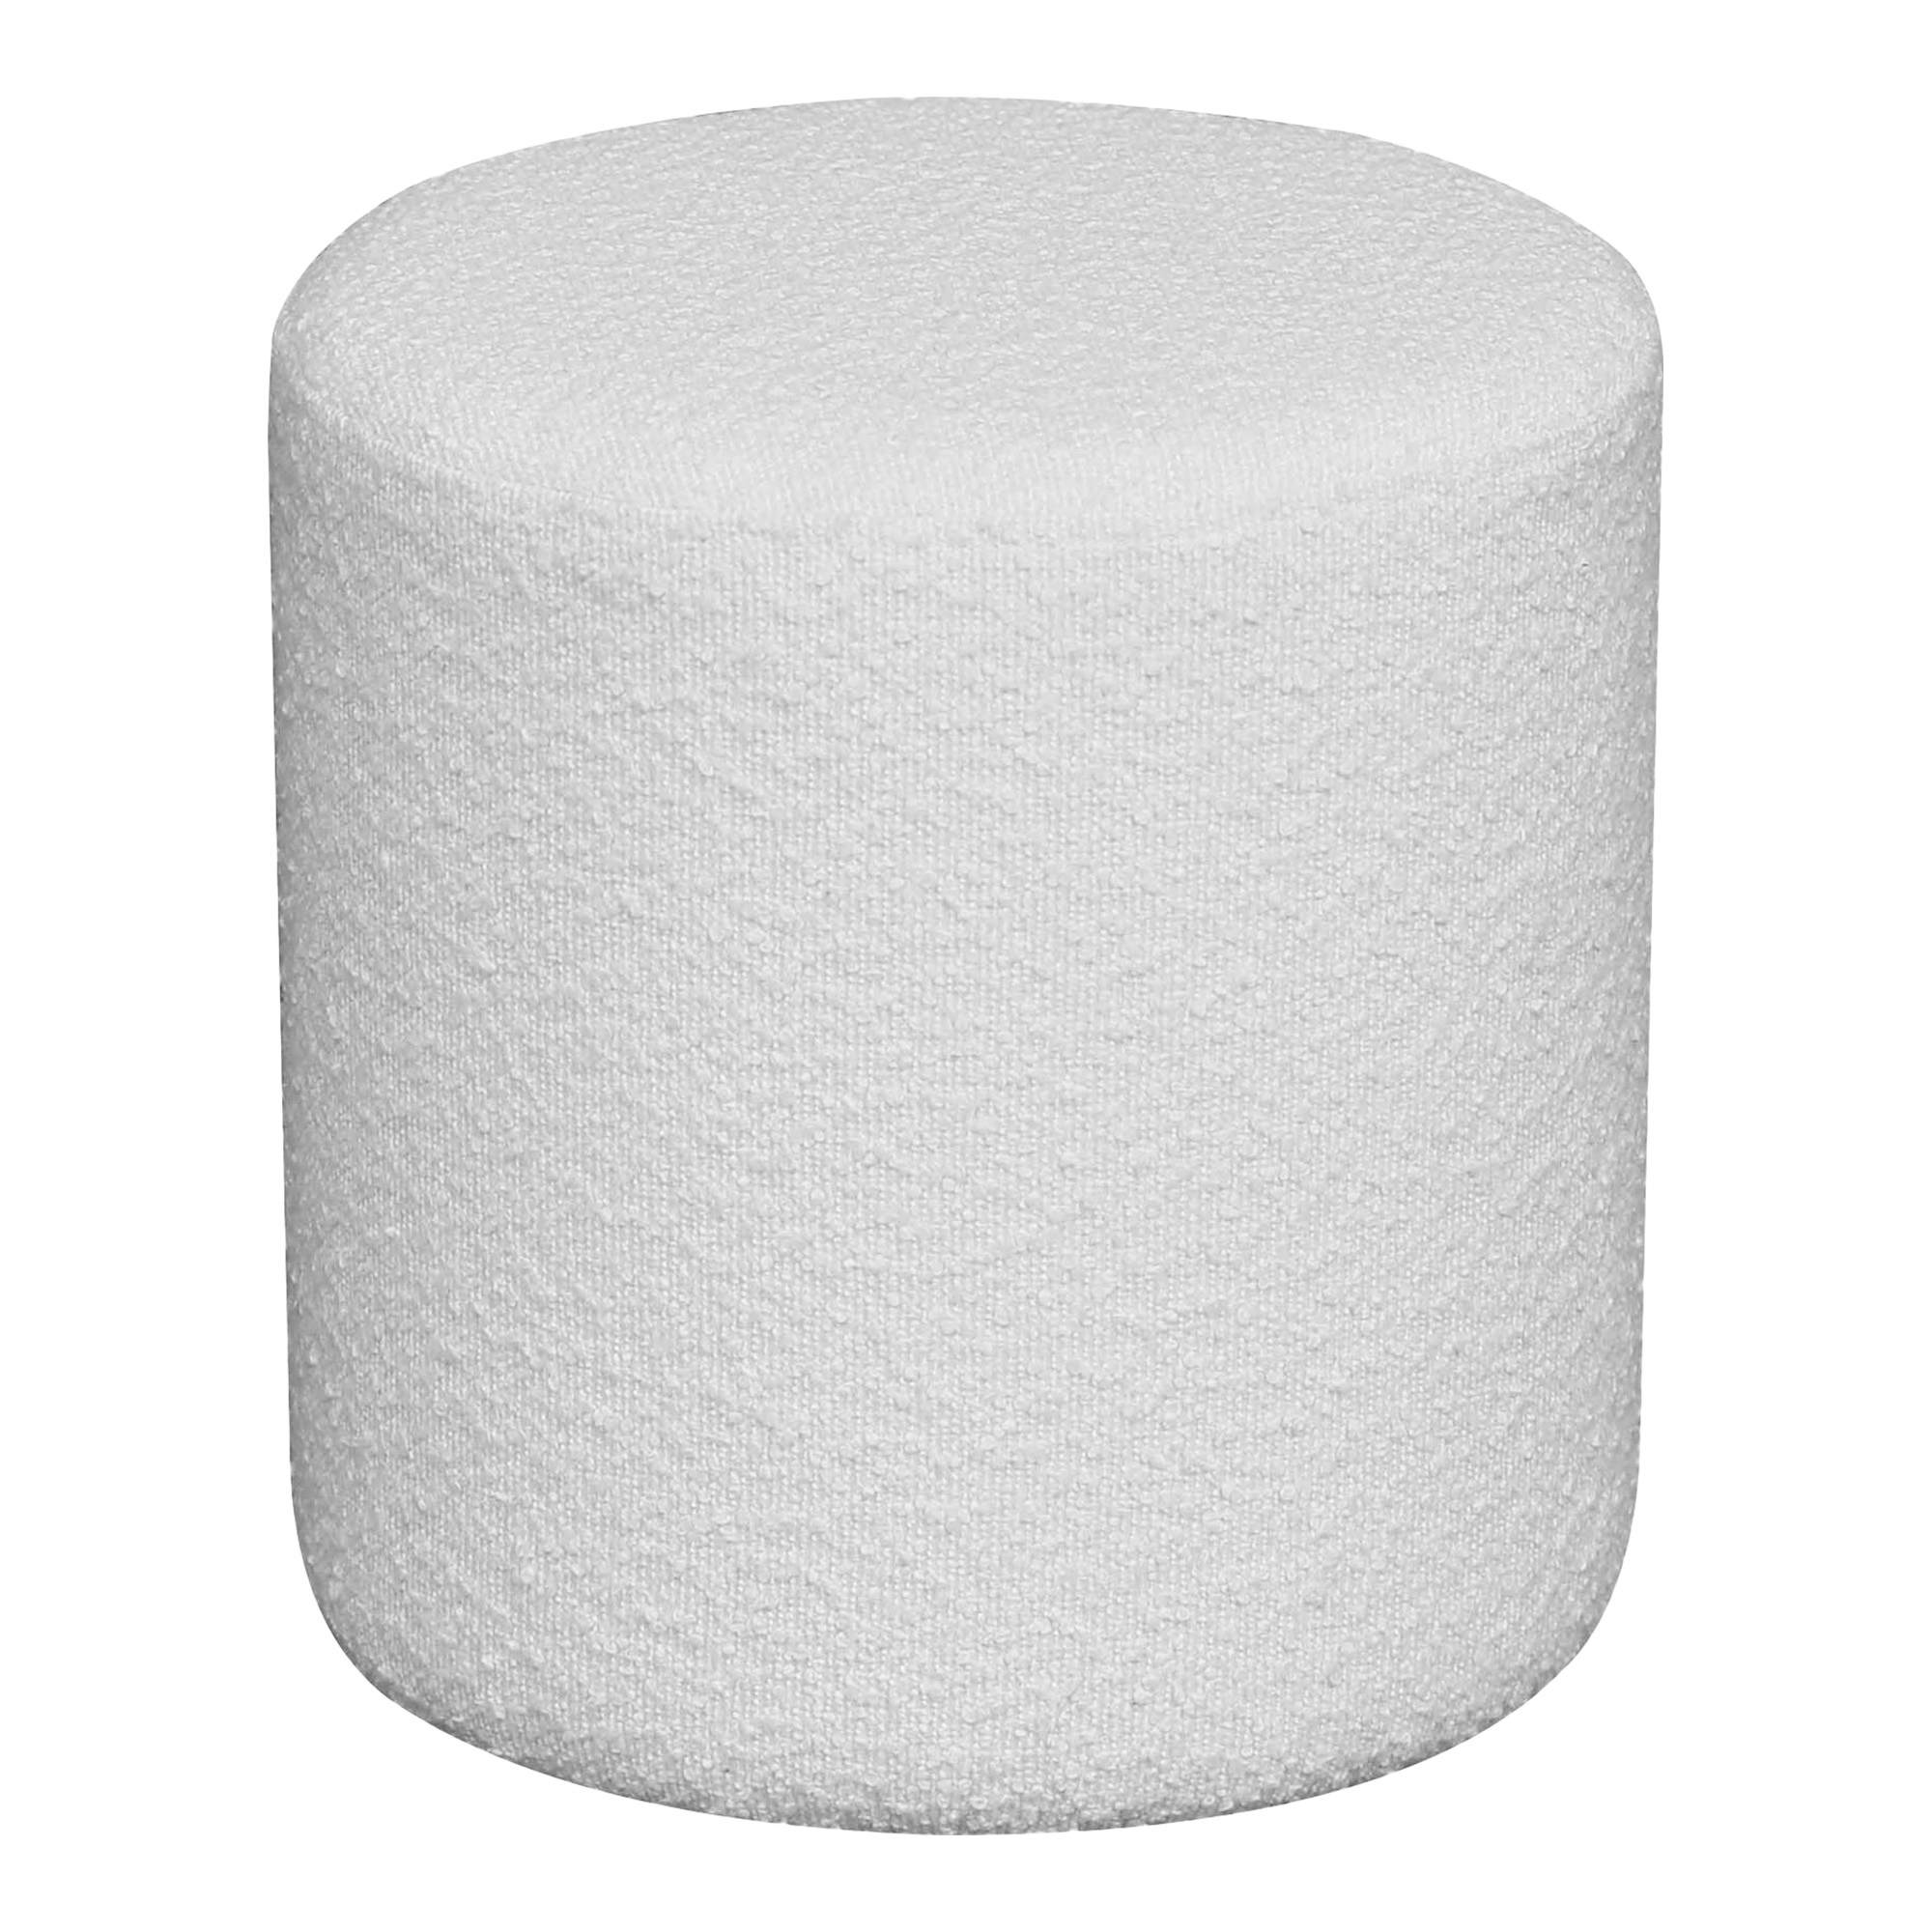 Billede af HOUSE NORDIC Ejby puf, rund - hvid bouclé polyester stof (Ø34)